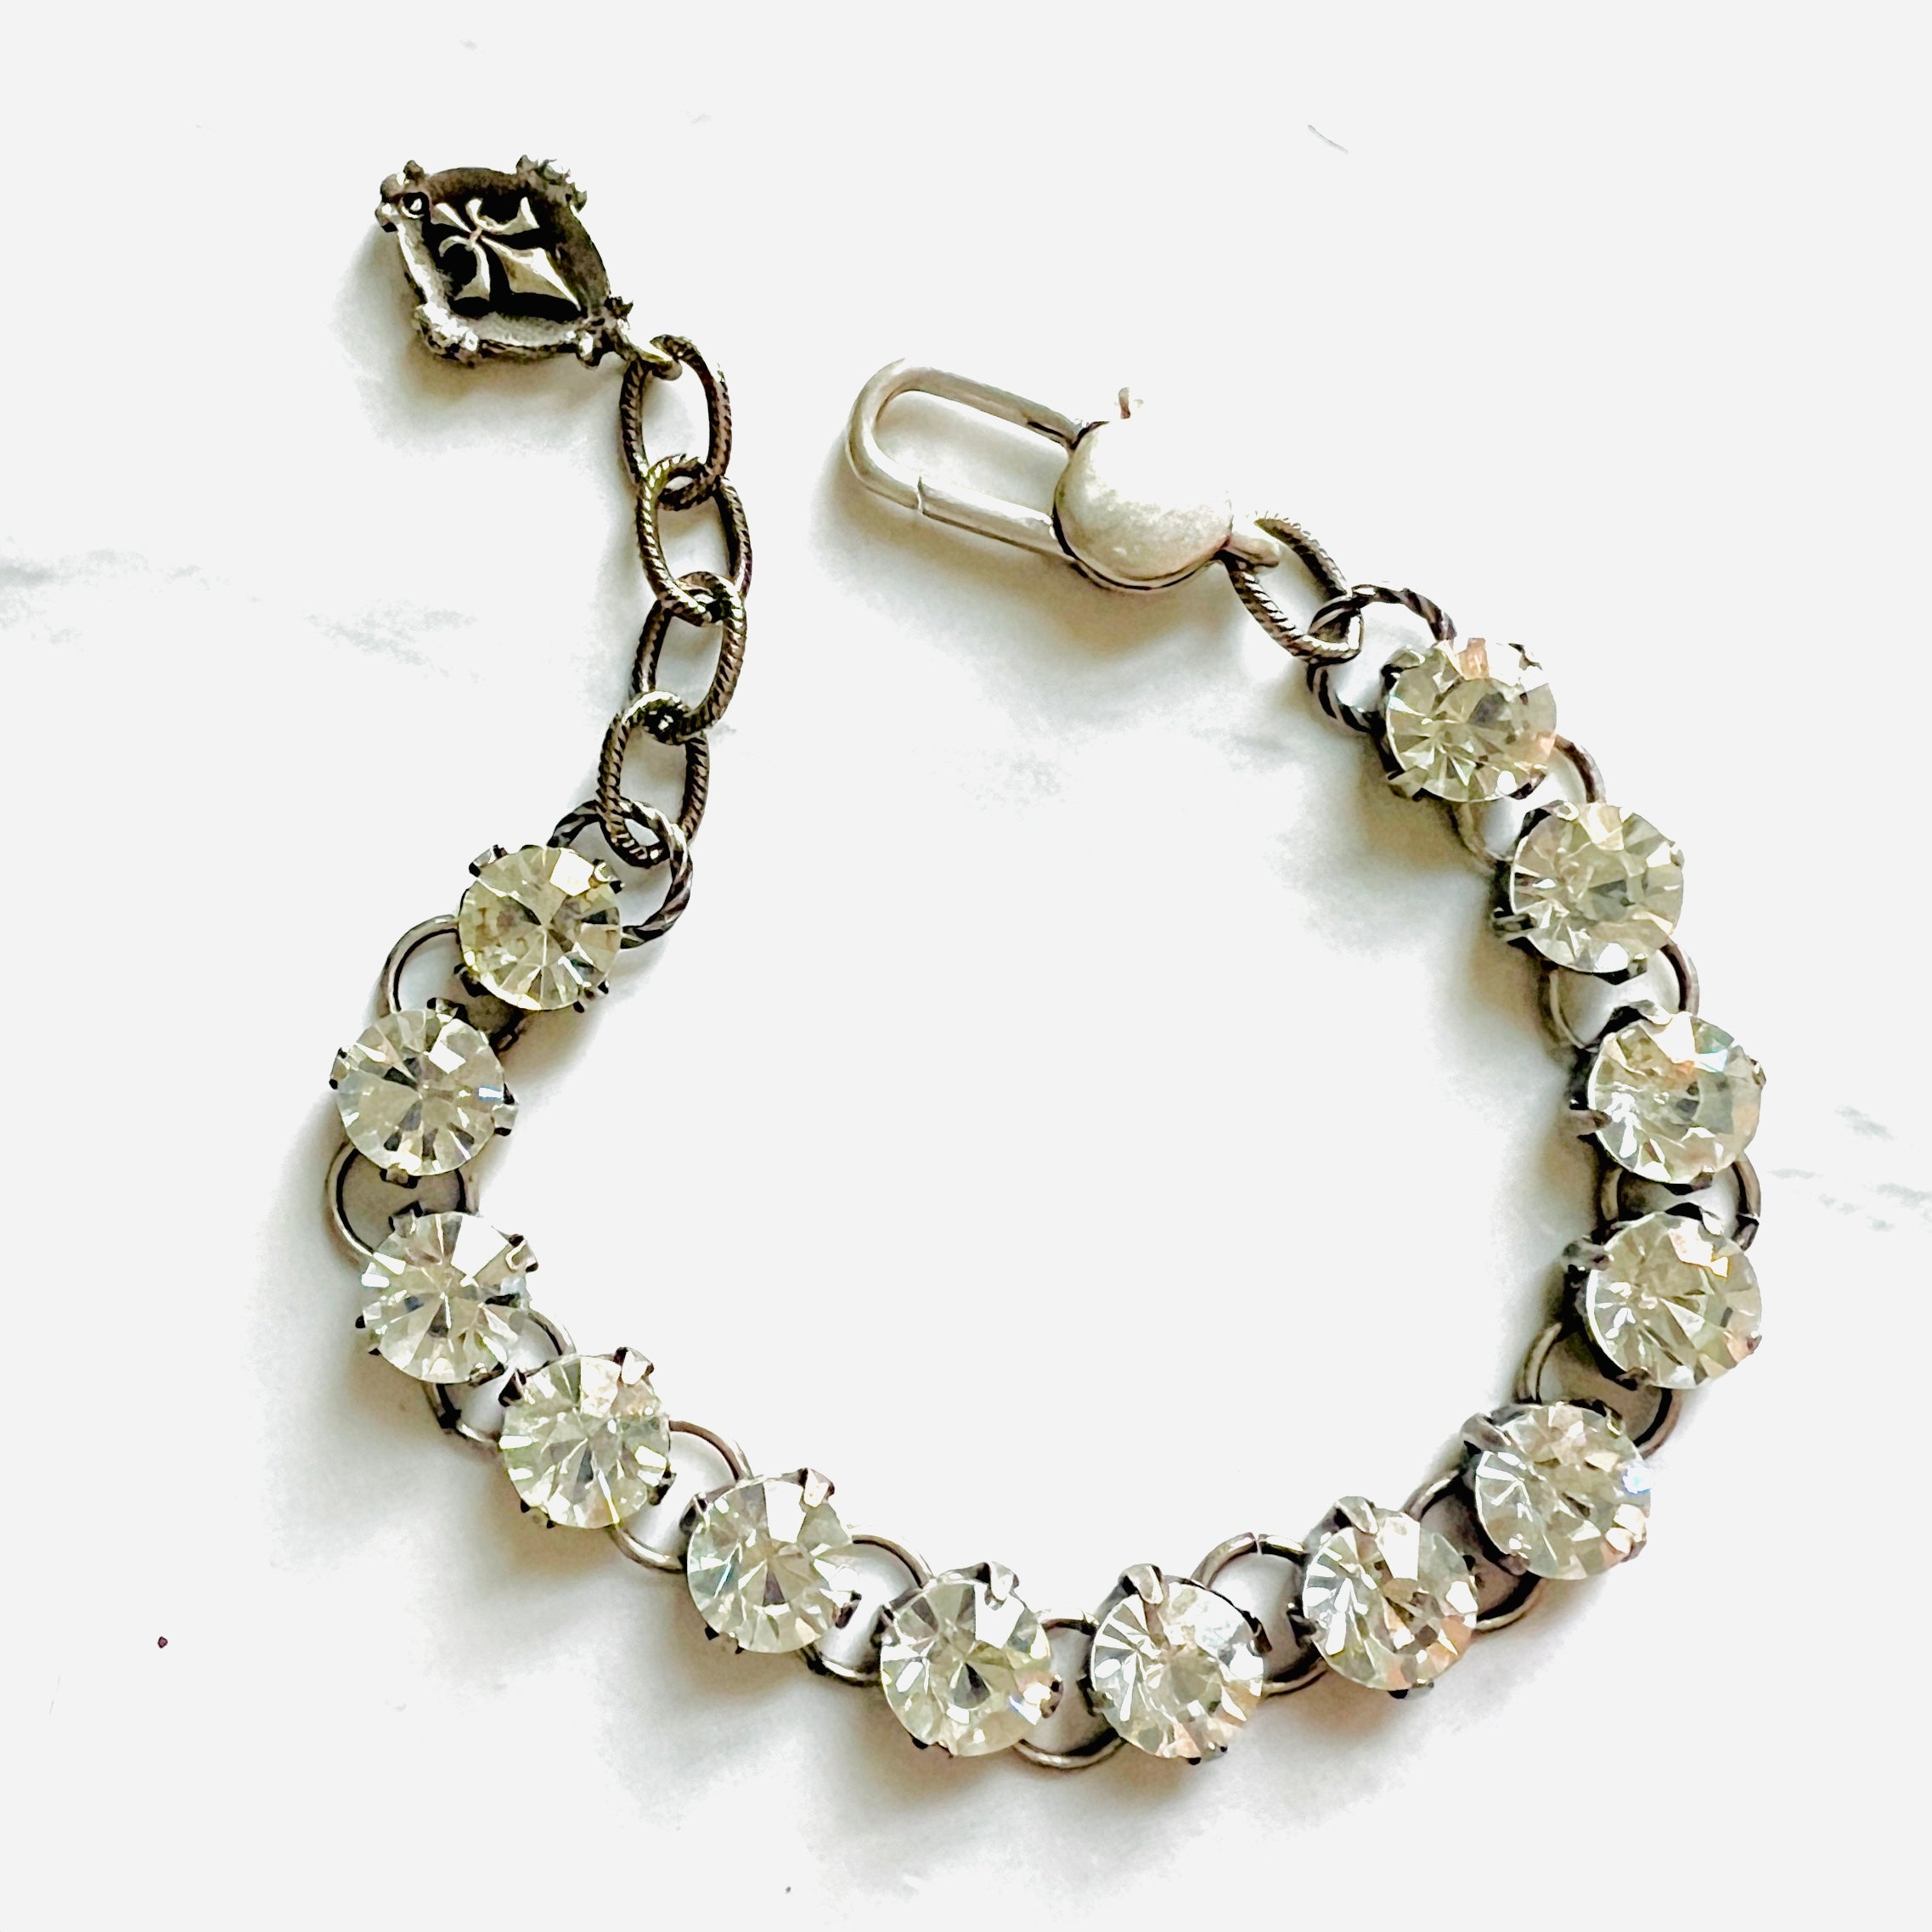 Buy Swarovski Crystal Bracelet Bezel Set Clear Crystals Long Necklace  Designer Signed Jewelry Online in India - Etsy